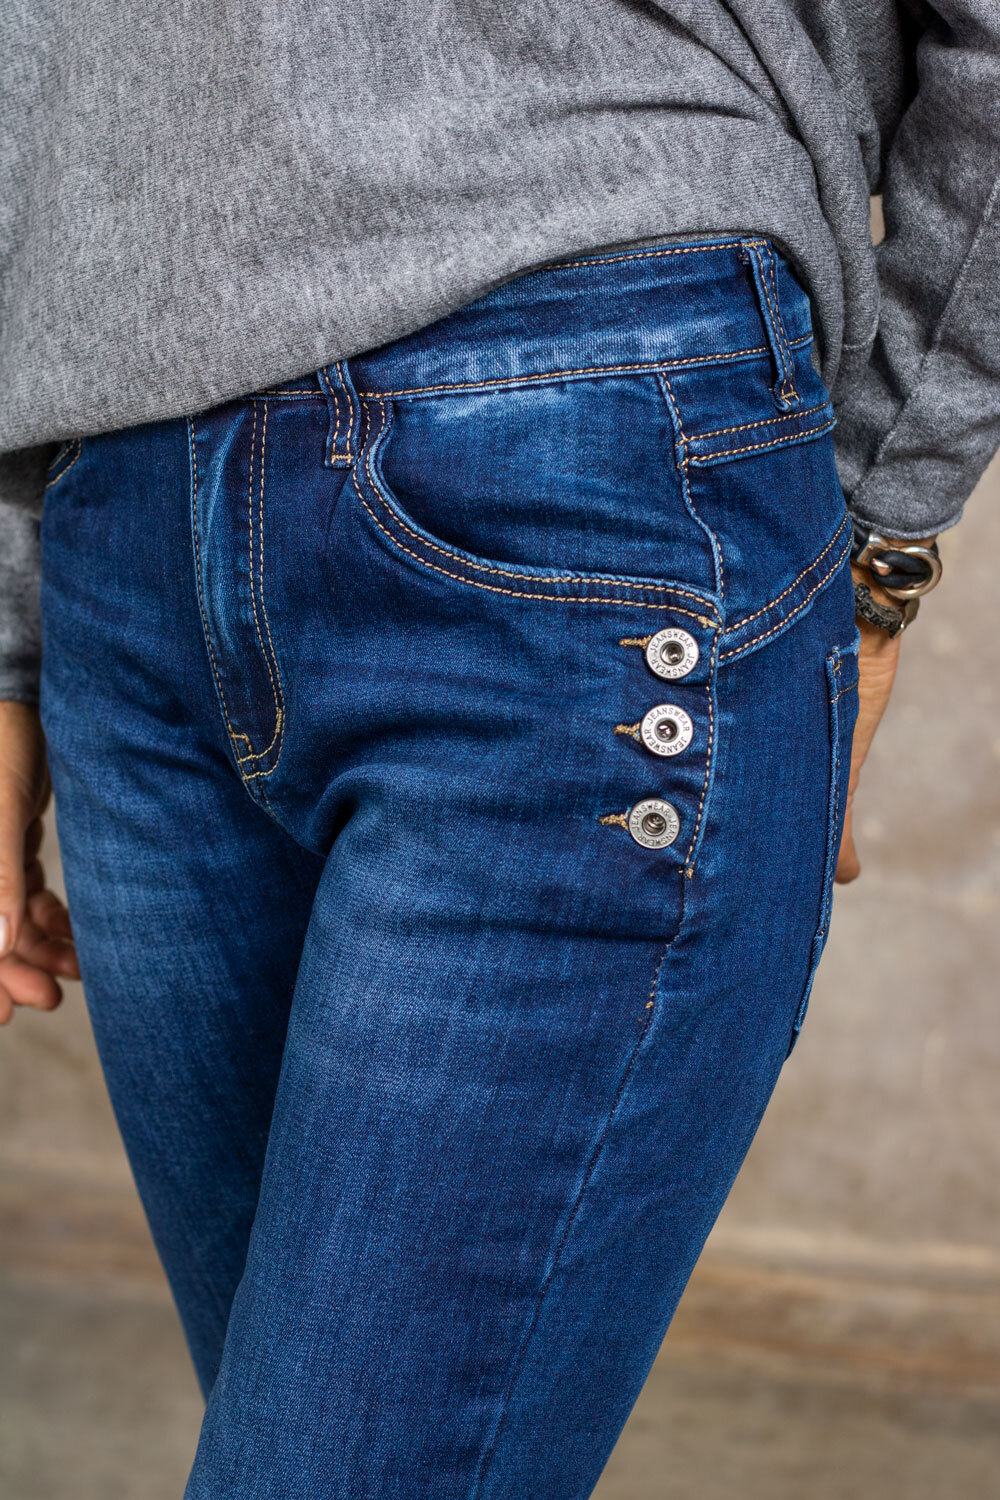 Jeans JW1531 - Buttons - Denim